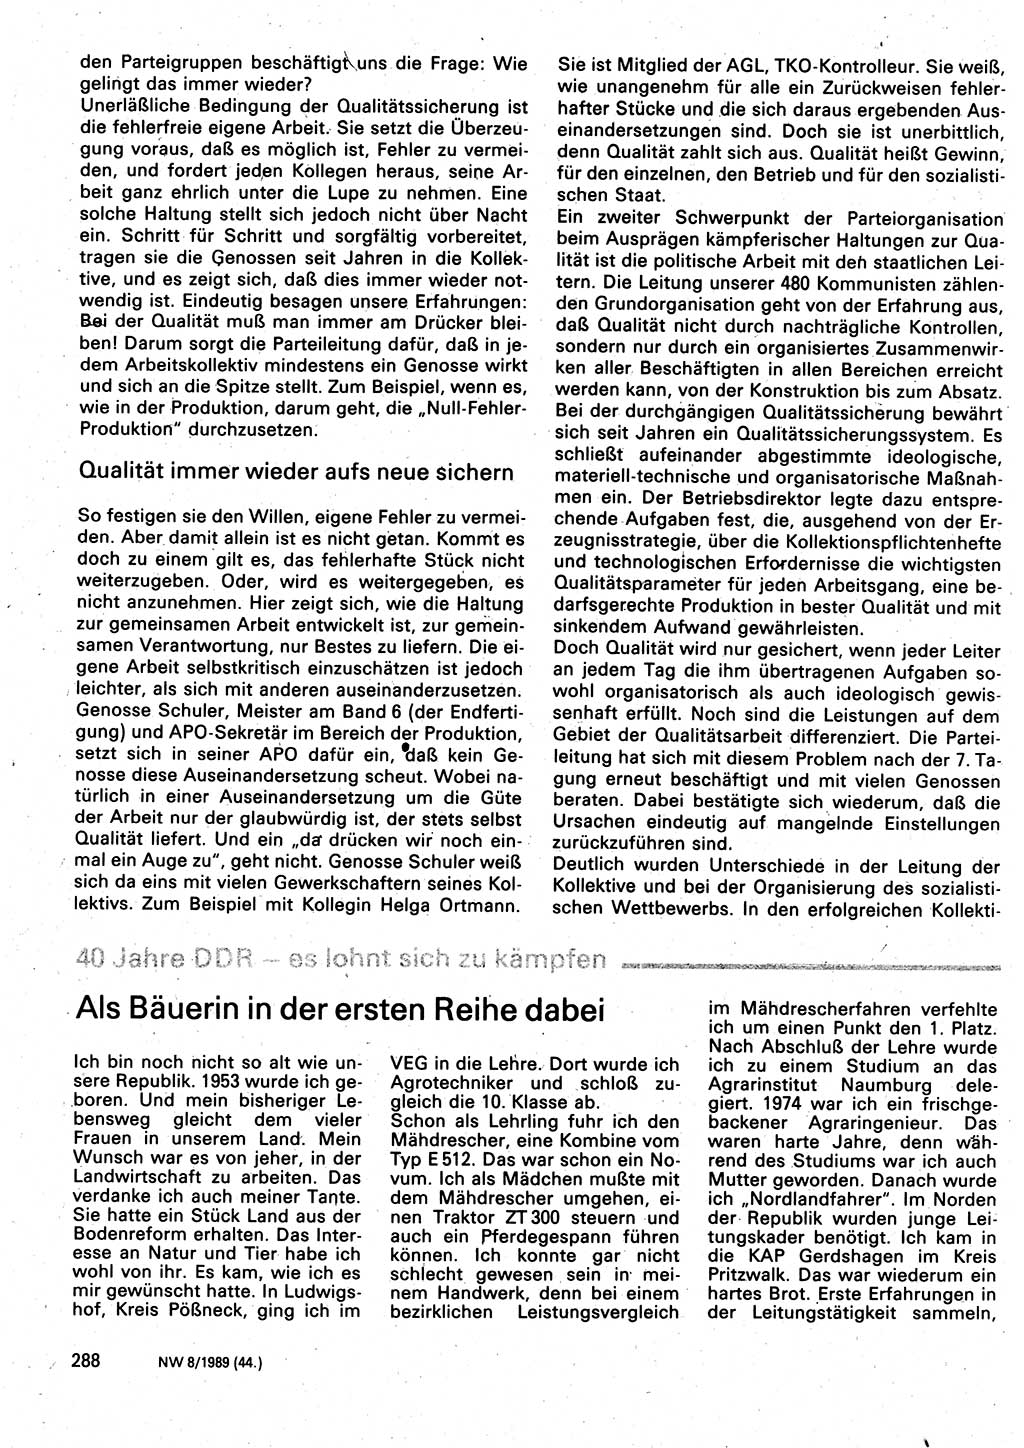 Neuer Weg (NW), Organ des Zentralkomitees (ZK) der SED (Sozialistische Einheitspartei Deutschlands) für Fragen des Parteilebens, 44. Jahrgang [Deutsche Demokratische Republik (DDR)] 1989, Seite 288 (NW ZK SED DDR 1989, S. 288)